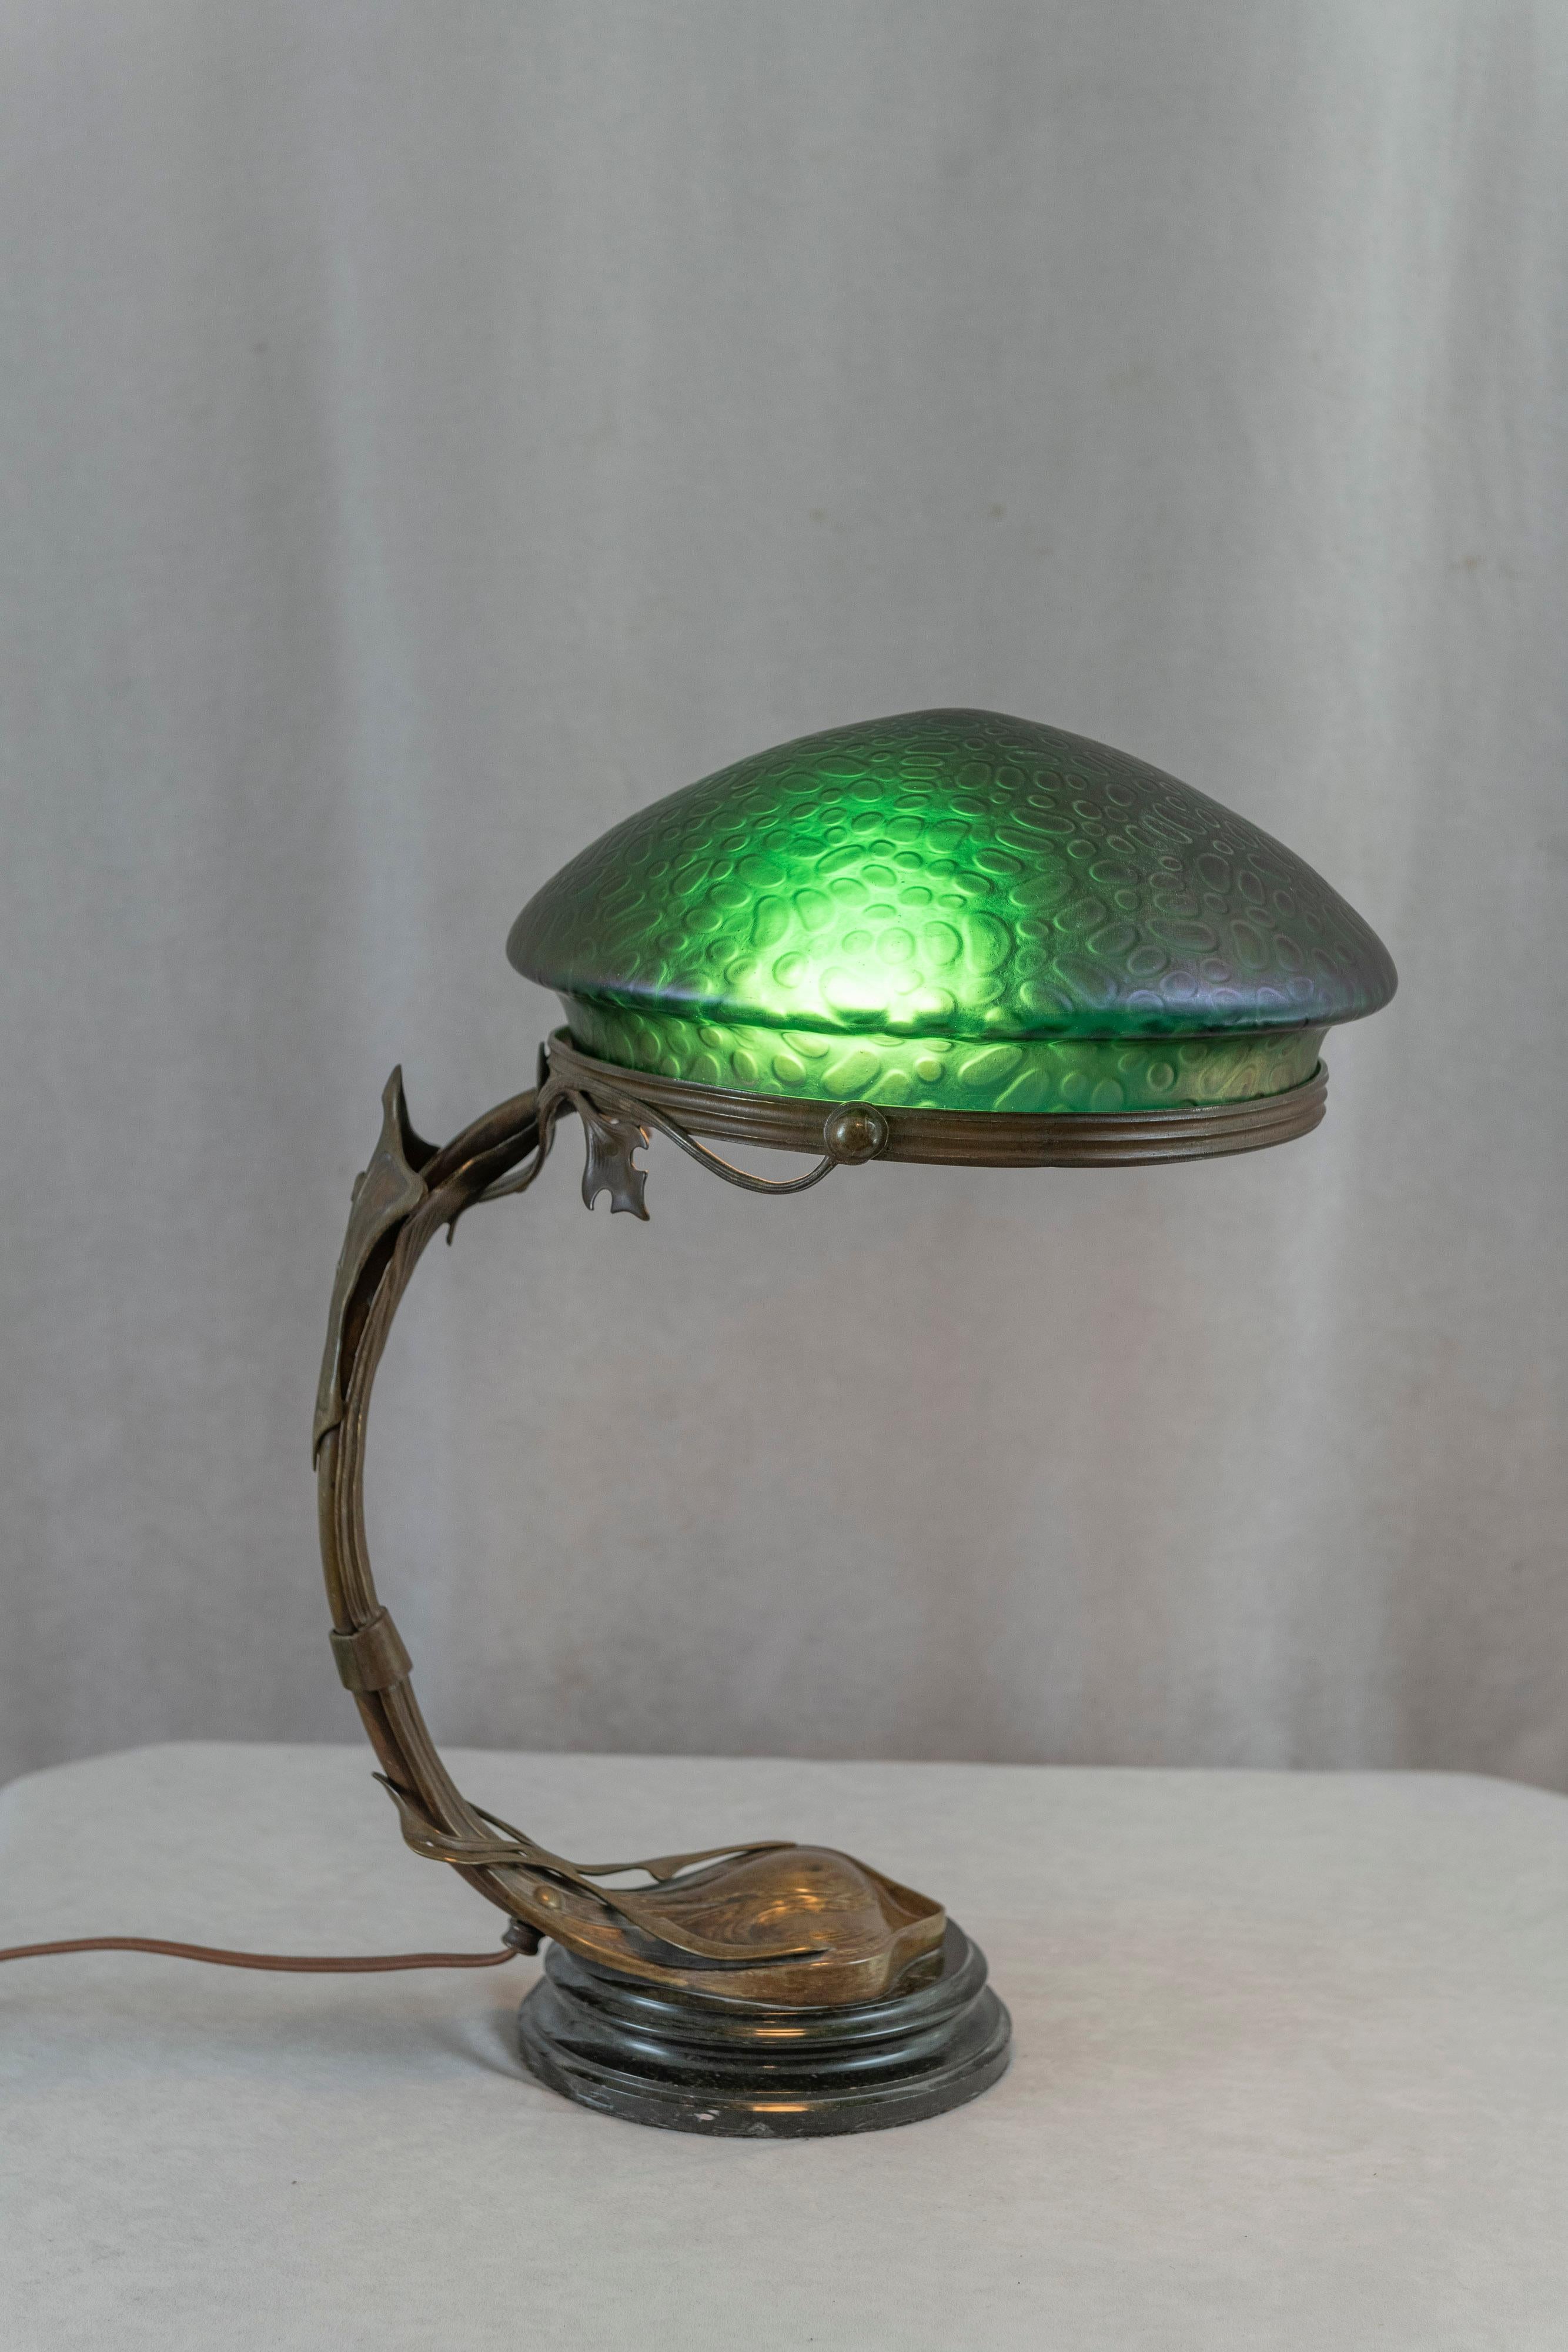 Un bel exemple d'éclairage de type Diptych Fine Arts. La base en bronze est richement patinée et joliment moulée avec un design art nouveau. L'ombre est d'un vert profond lorsqu'elle est allumée et d'un violet et d'un vert lorsqu'elle est éteinte.